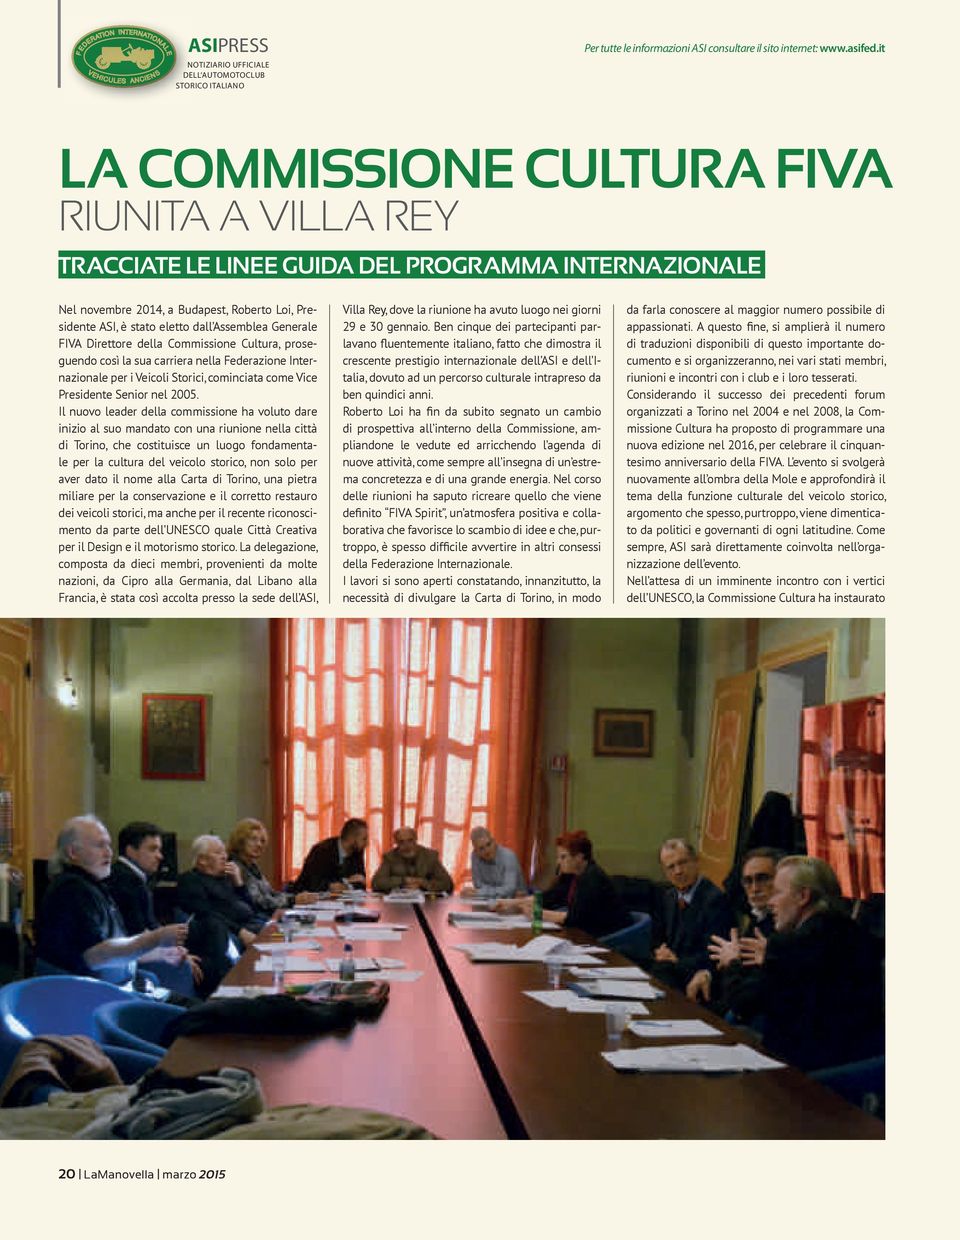 Generale FIVA Direttore della Commissione Cultura, proseguendo così la sua carriera nella Federazione Internazionale per i Veicoli Storici, cominciata come Vice Presidente Senior nel 2005.